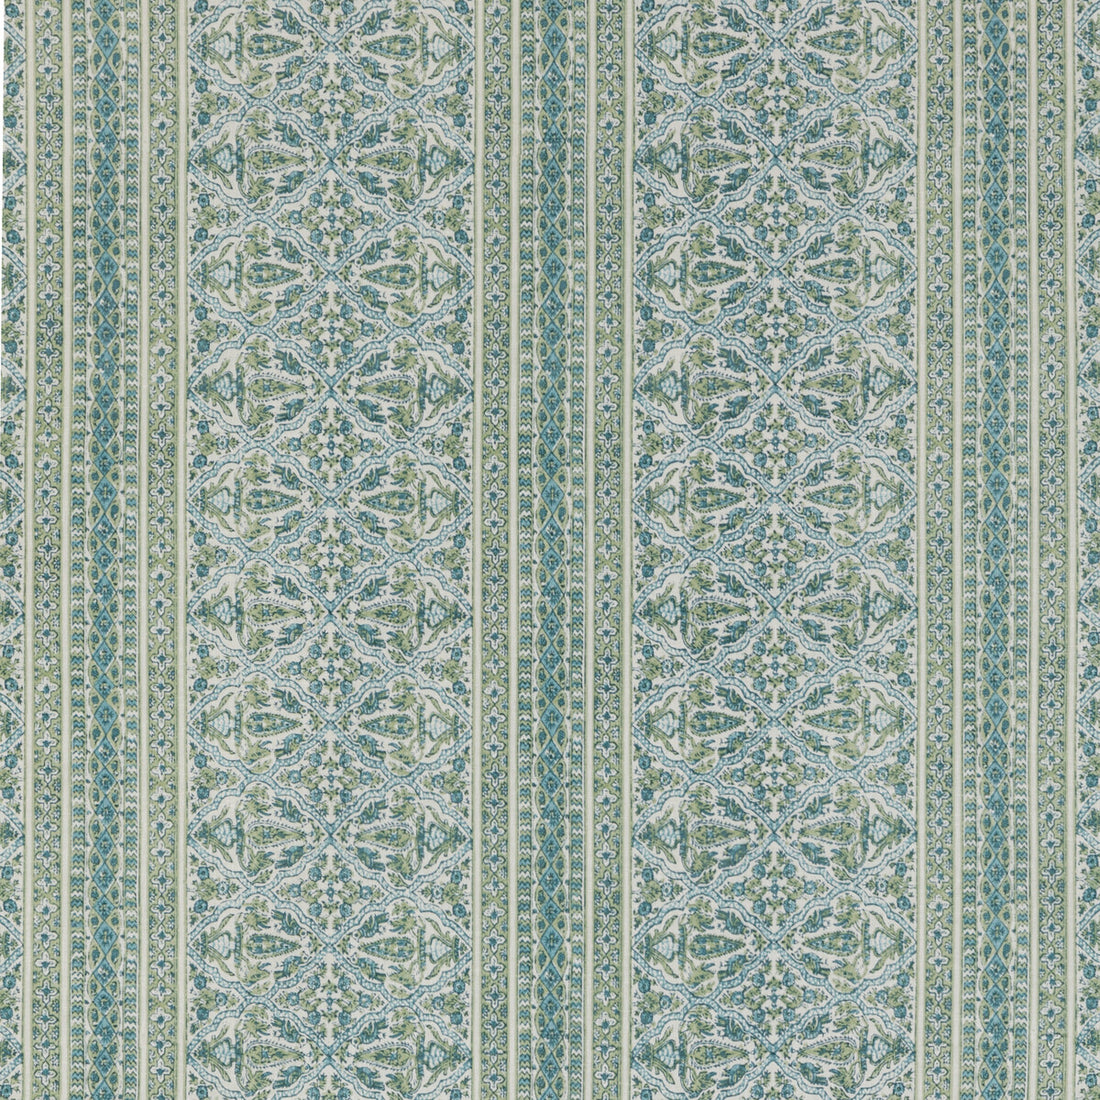 Kravet Basics fabric in mysore-30 color - pattern MYSORE.30.0 - by Kravet Basics in the L&